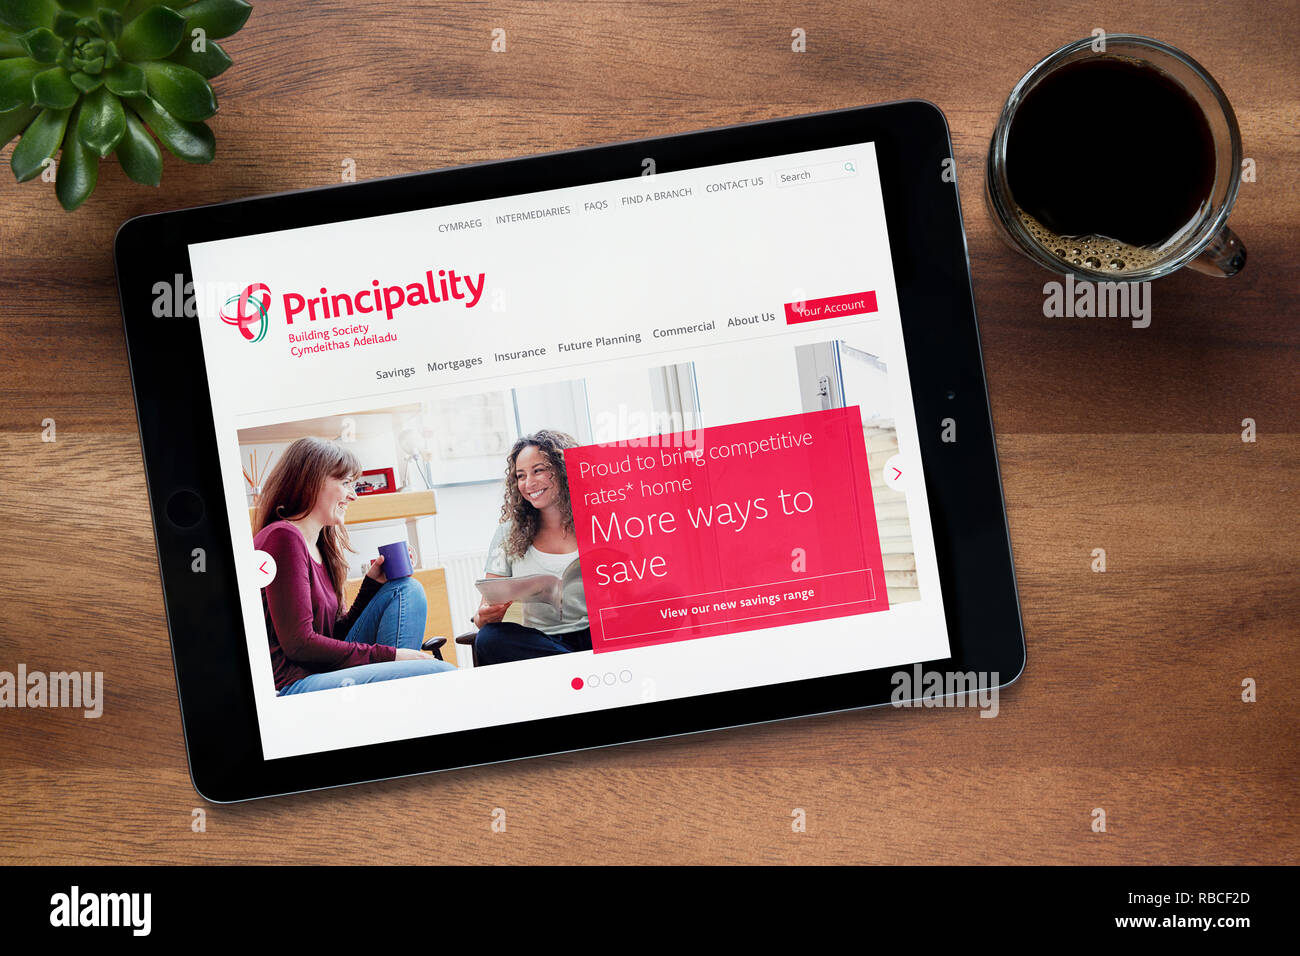 Il sito web del Principato la costruzione della società è visto su un tablet iPad, appoggiato su una tavola di legno (solo uso editoriale). Foto Stock